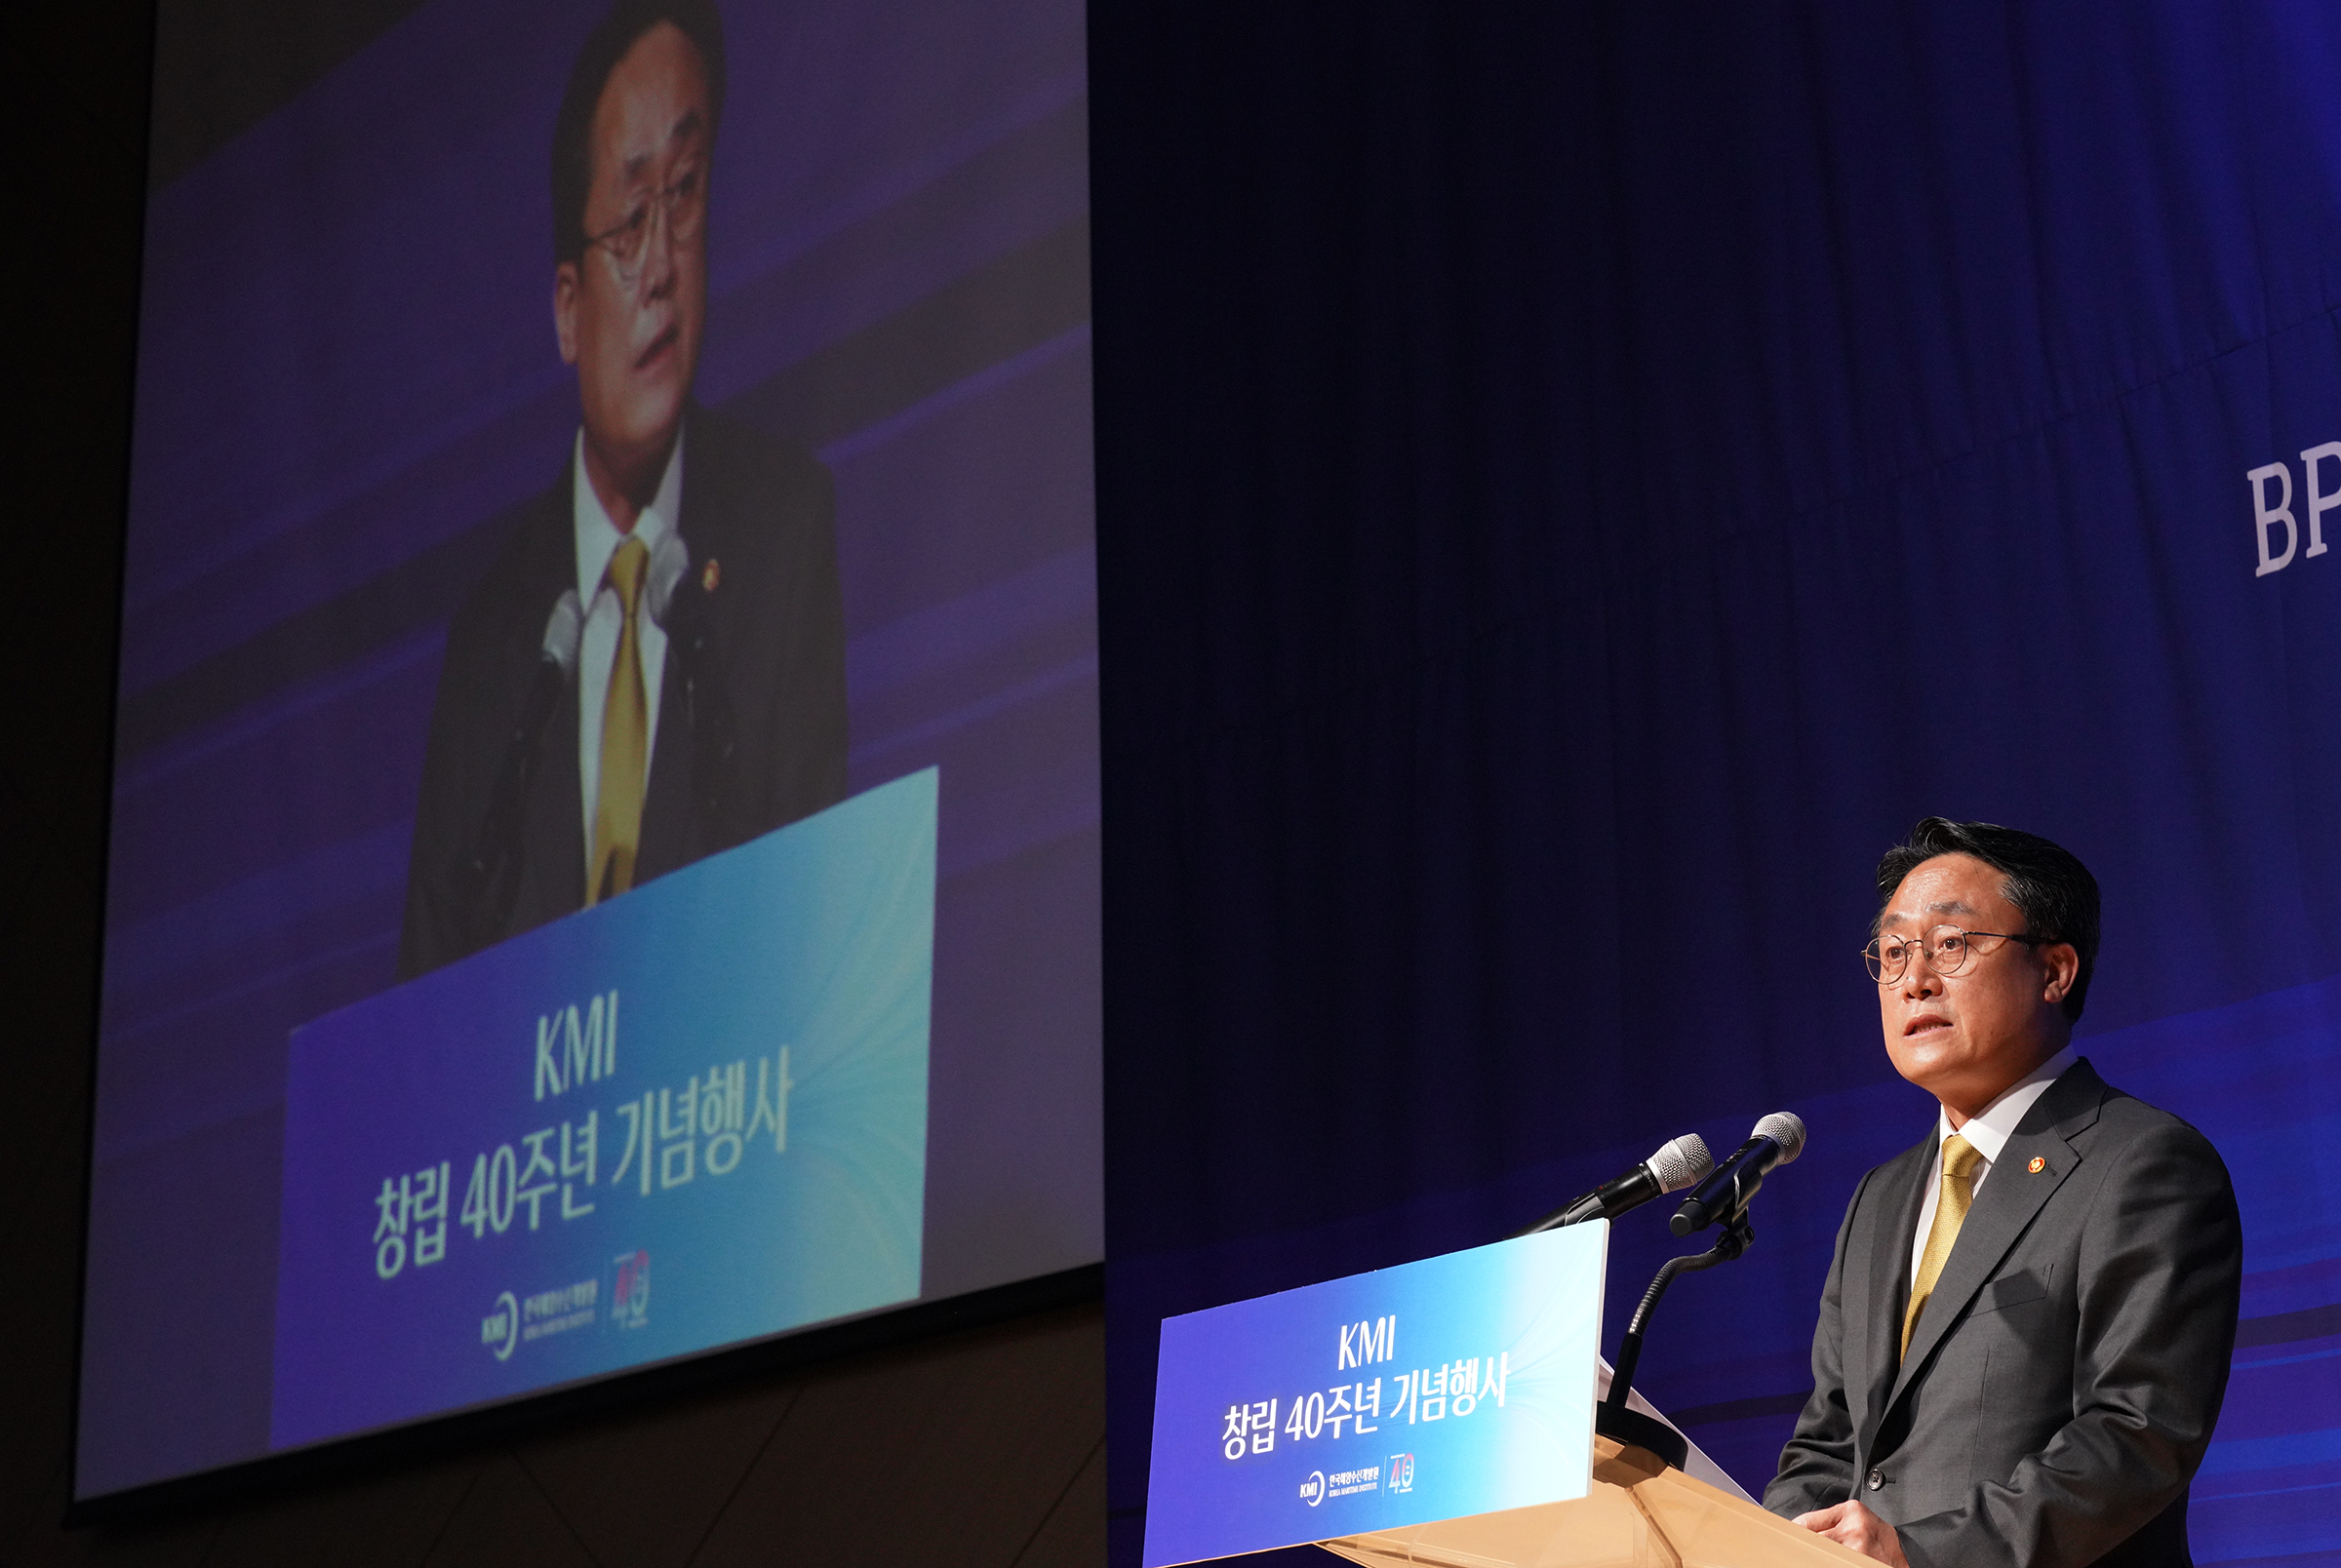 한국해양수산개발원 창립 40주년 기념식(24